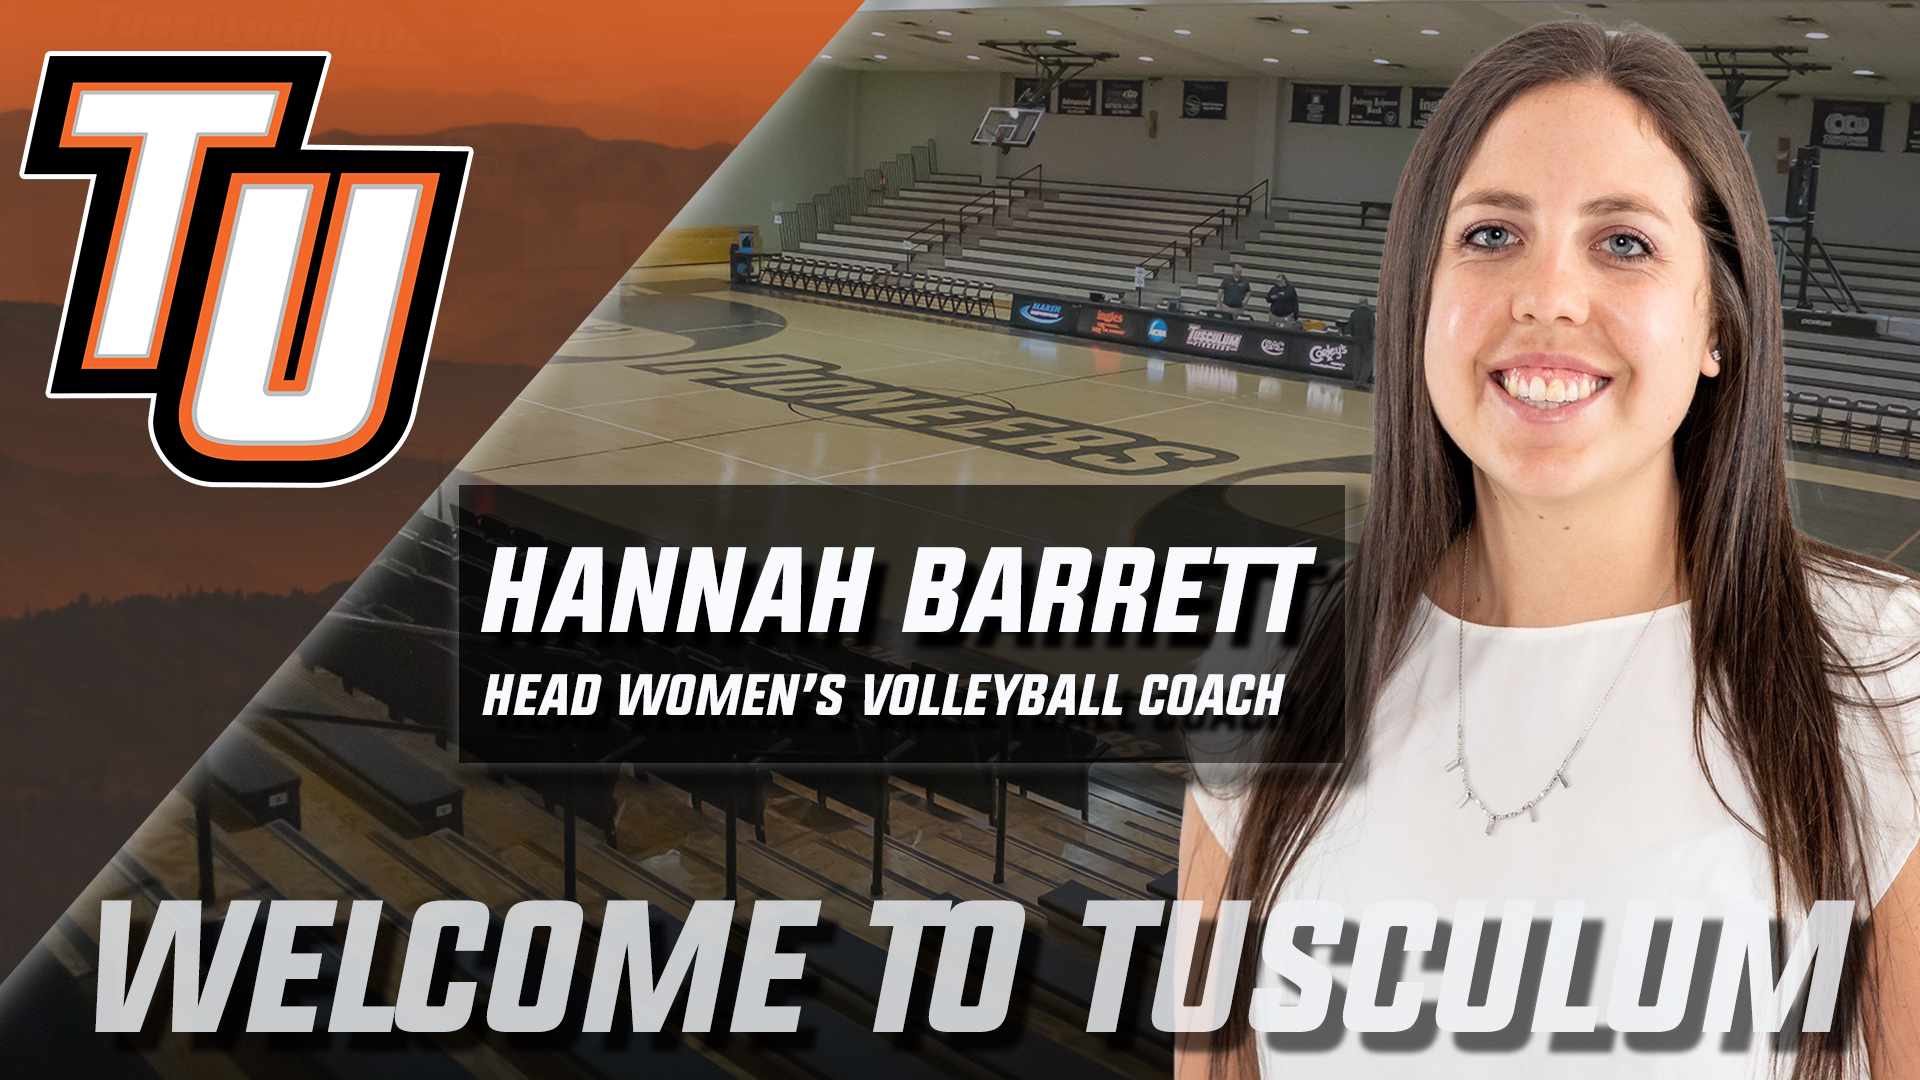 Hannah Barrett named women's volleyball coach